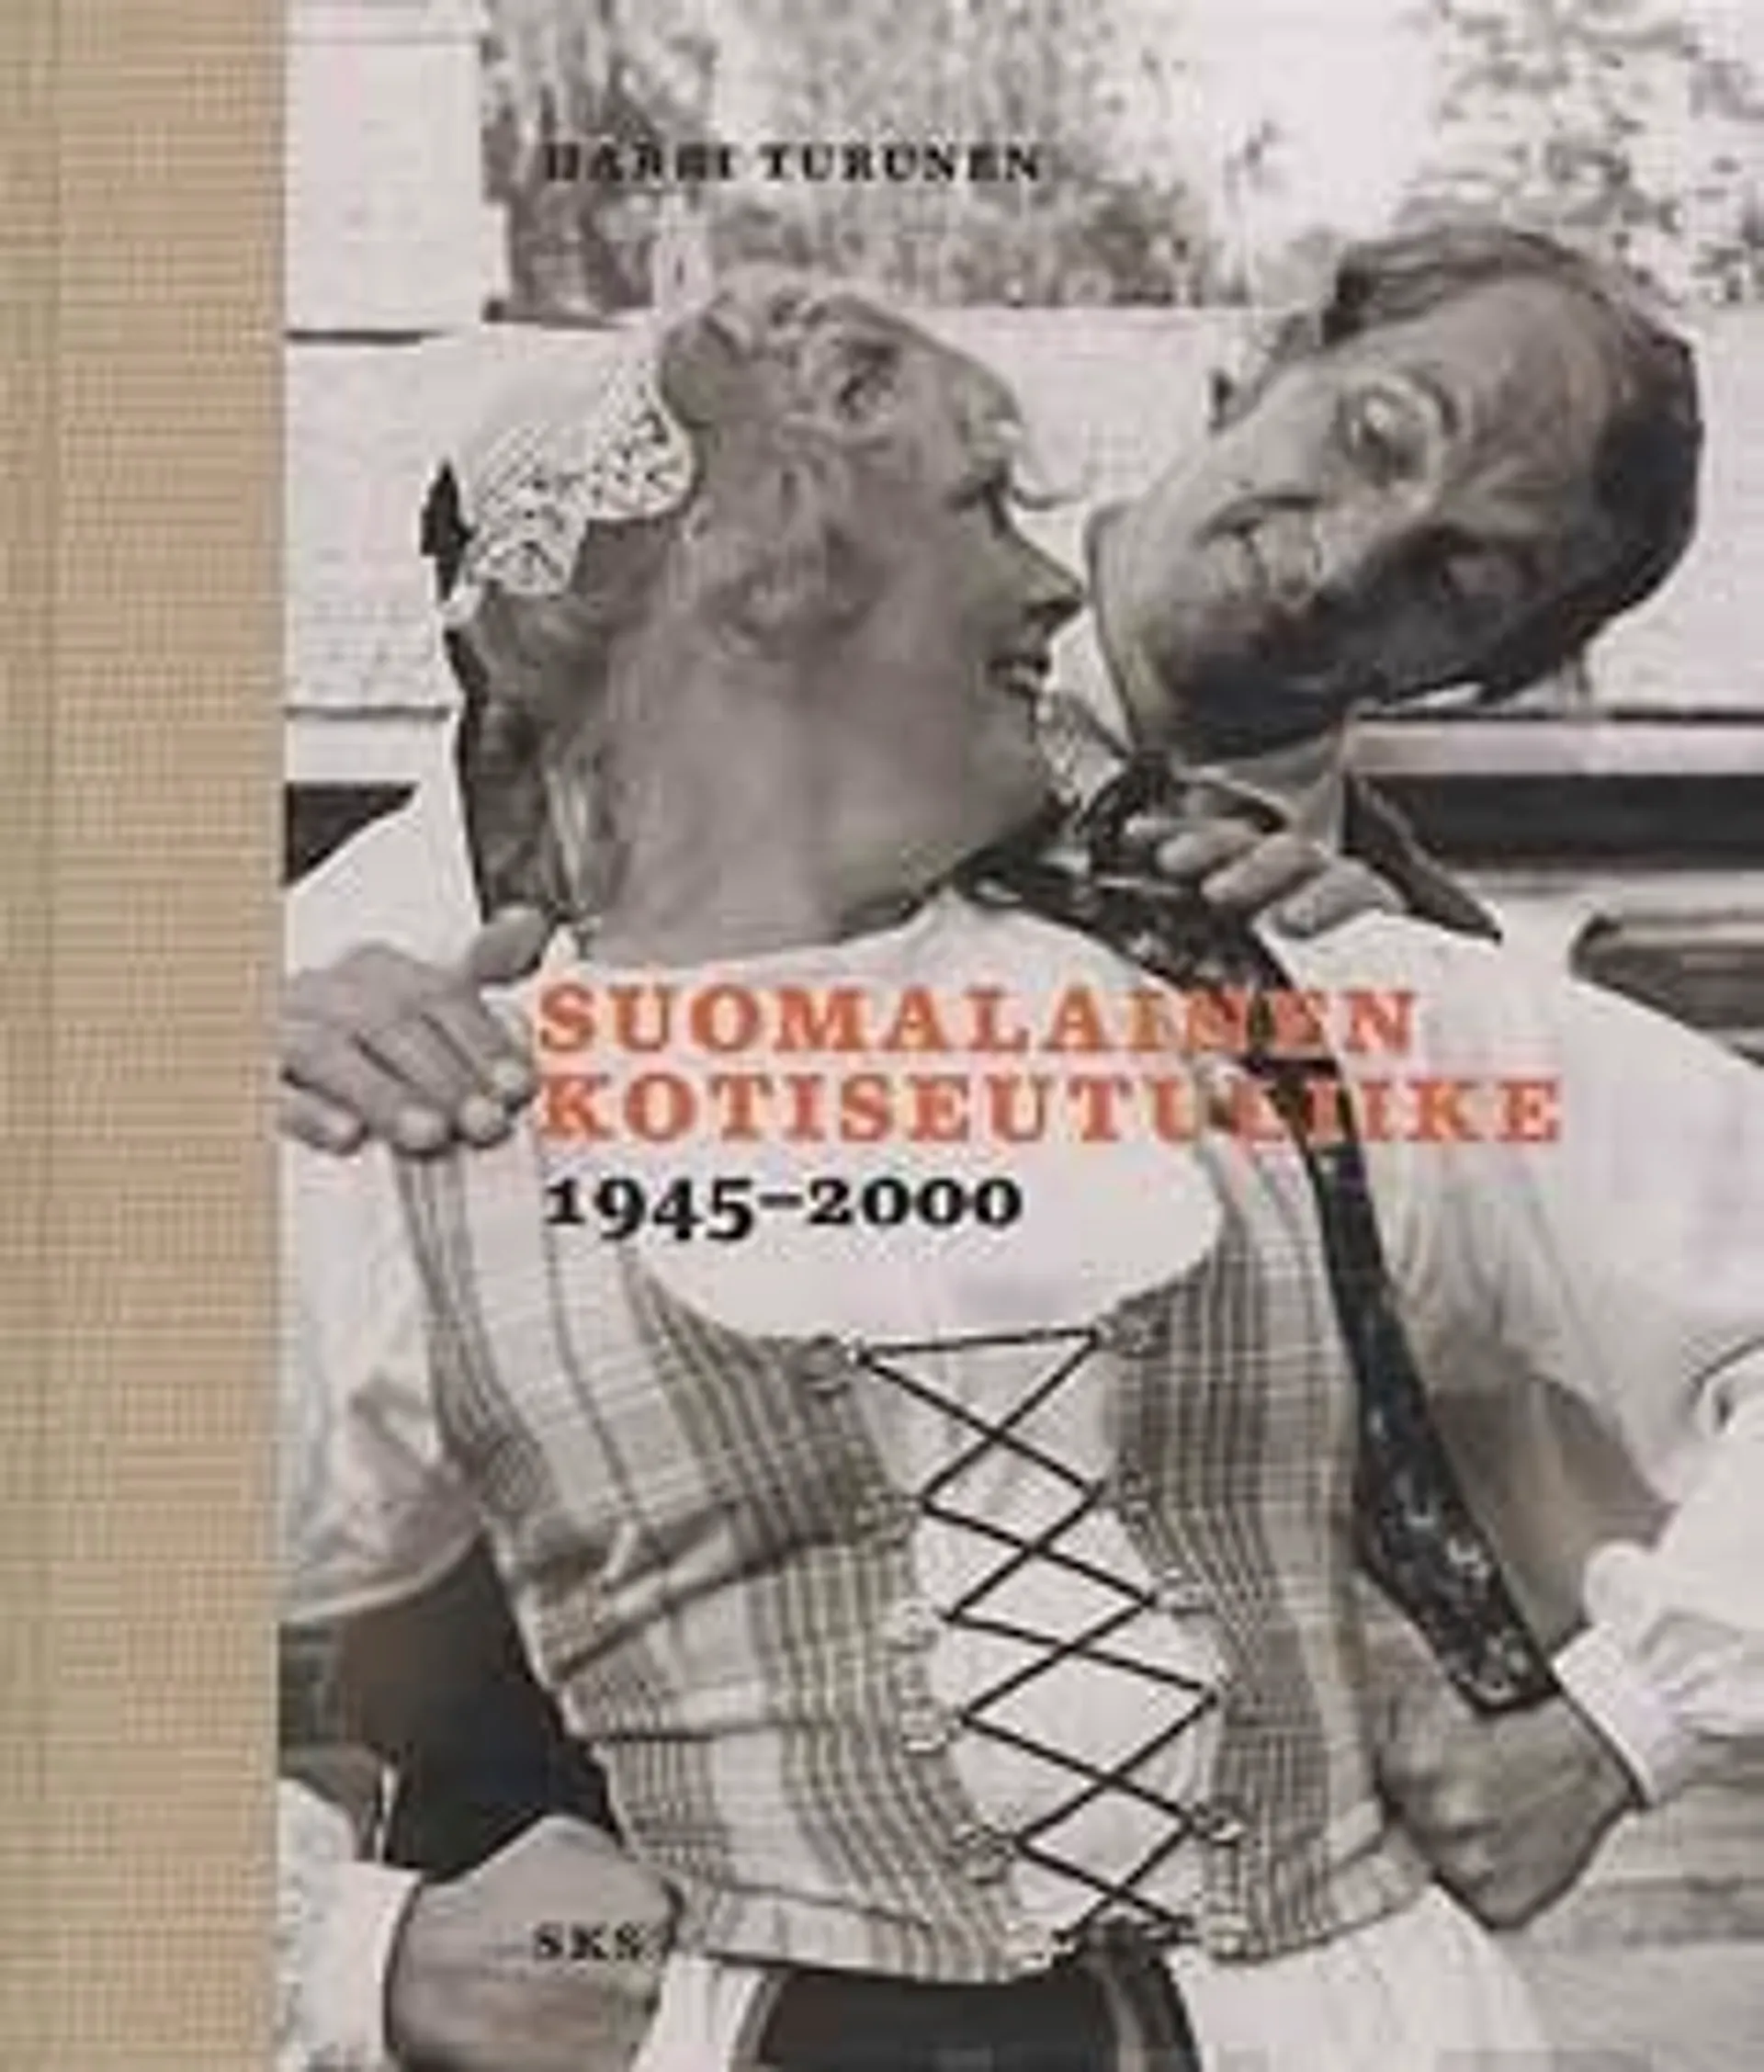 Suomalainen kotiseutuliike 1945-2000